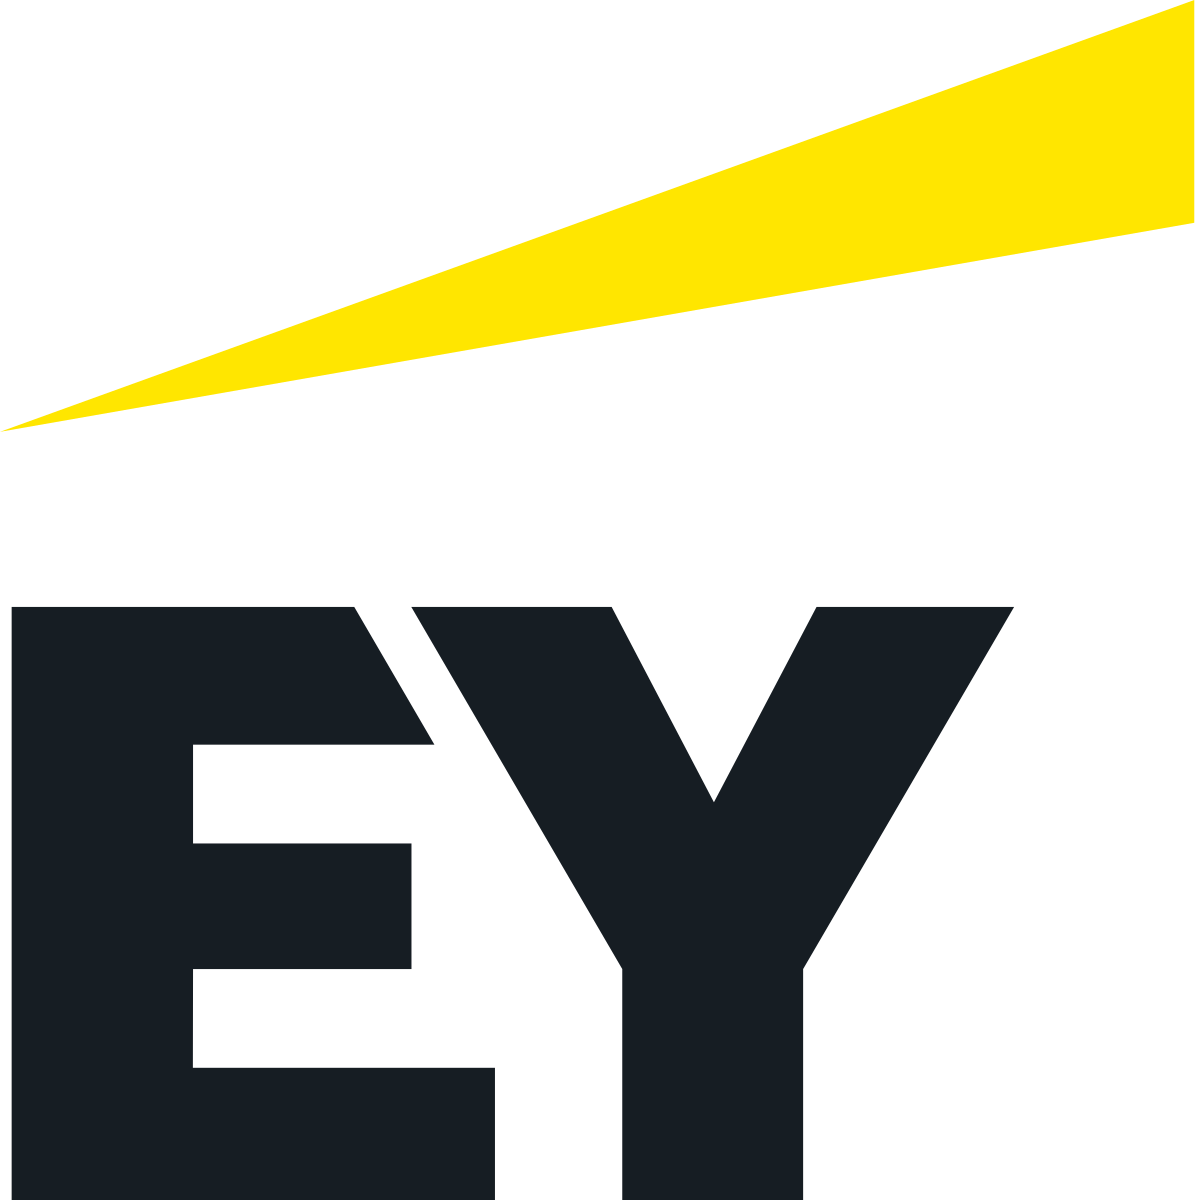 EY Logo PNG Image